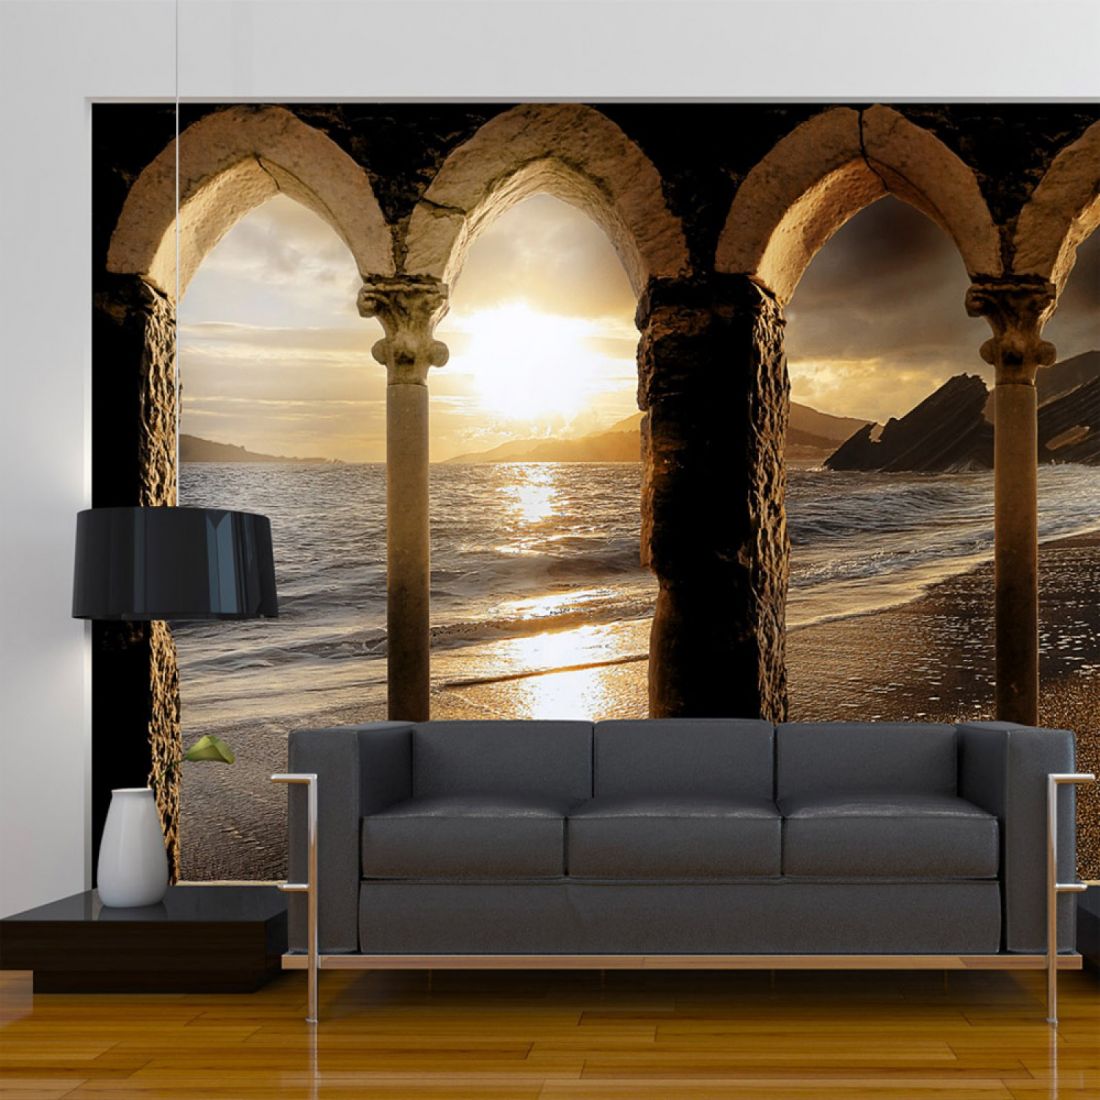 Giấy dán tường tranh 3D cảnh hoàng hôn trên biển với kiến trúc lâu đài cổ.